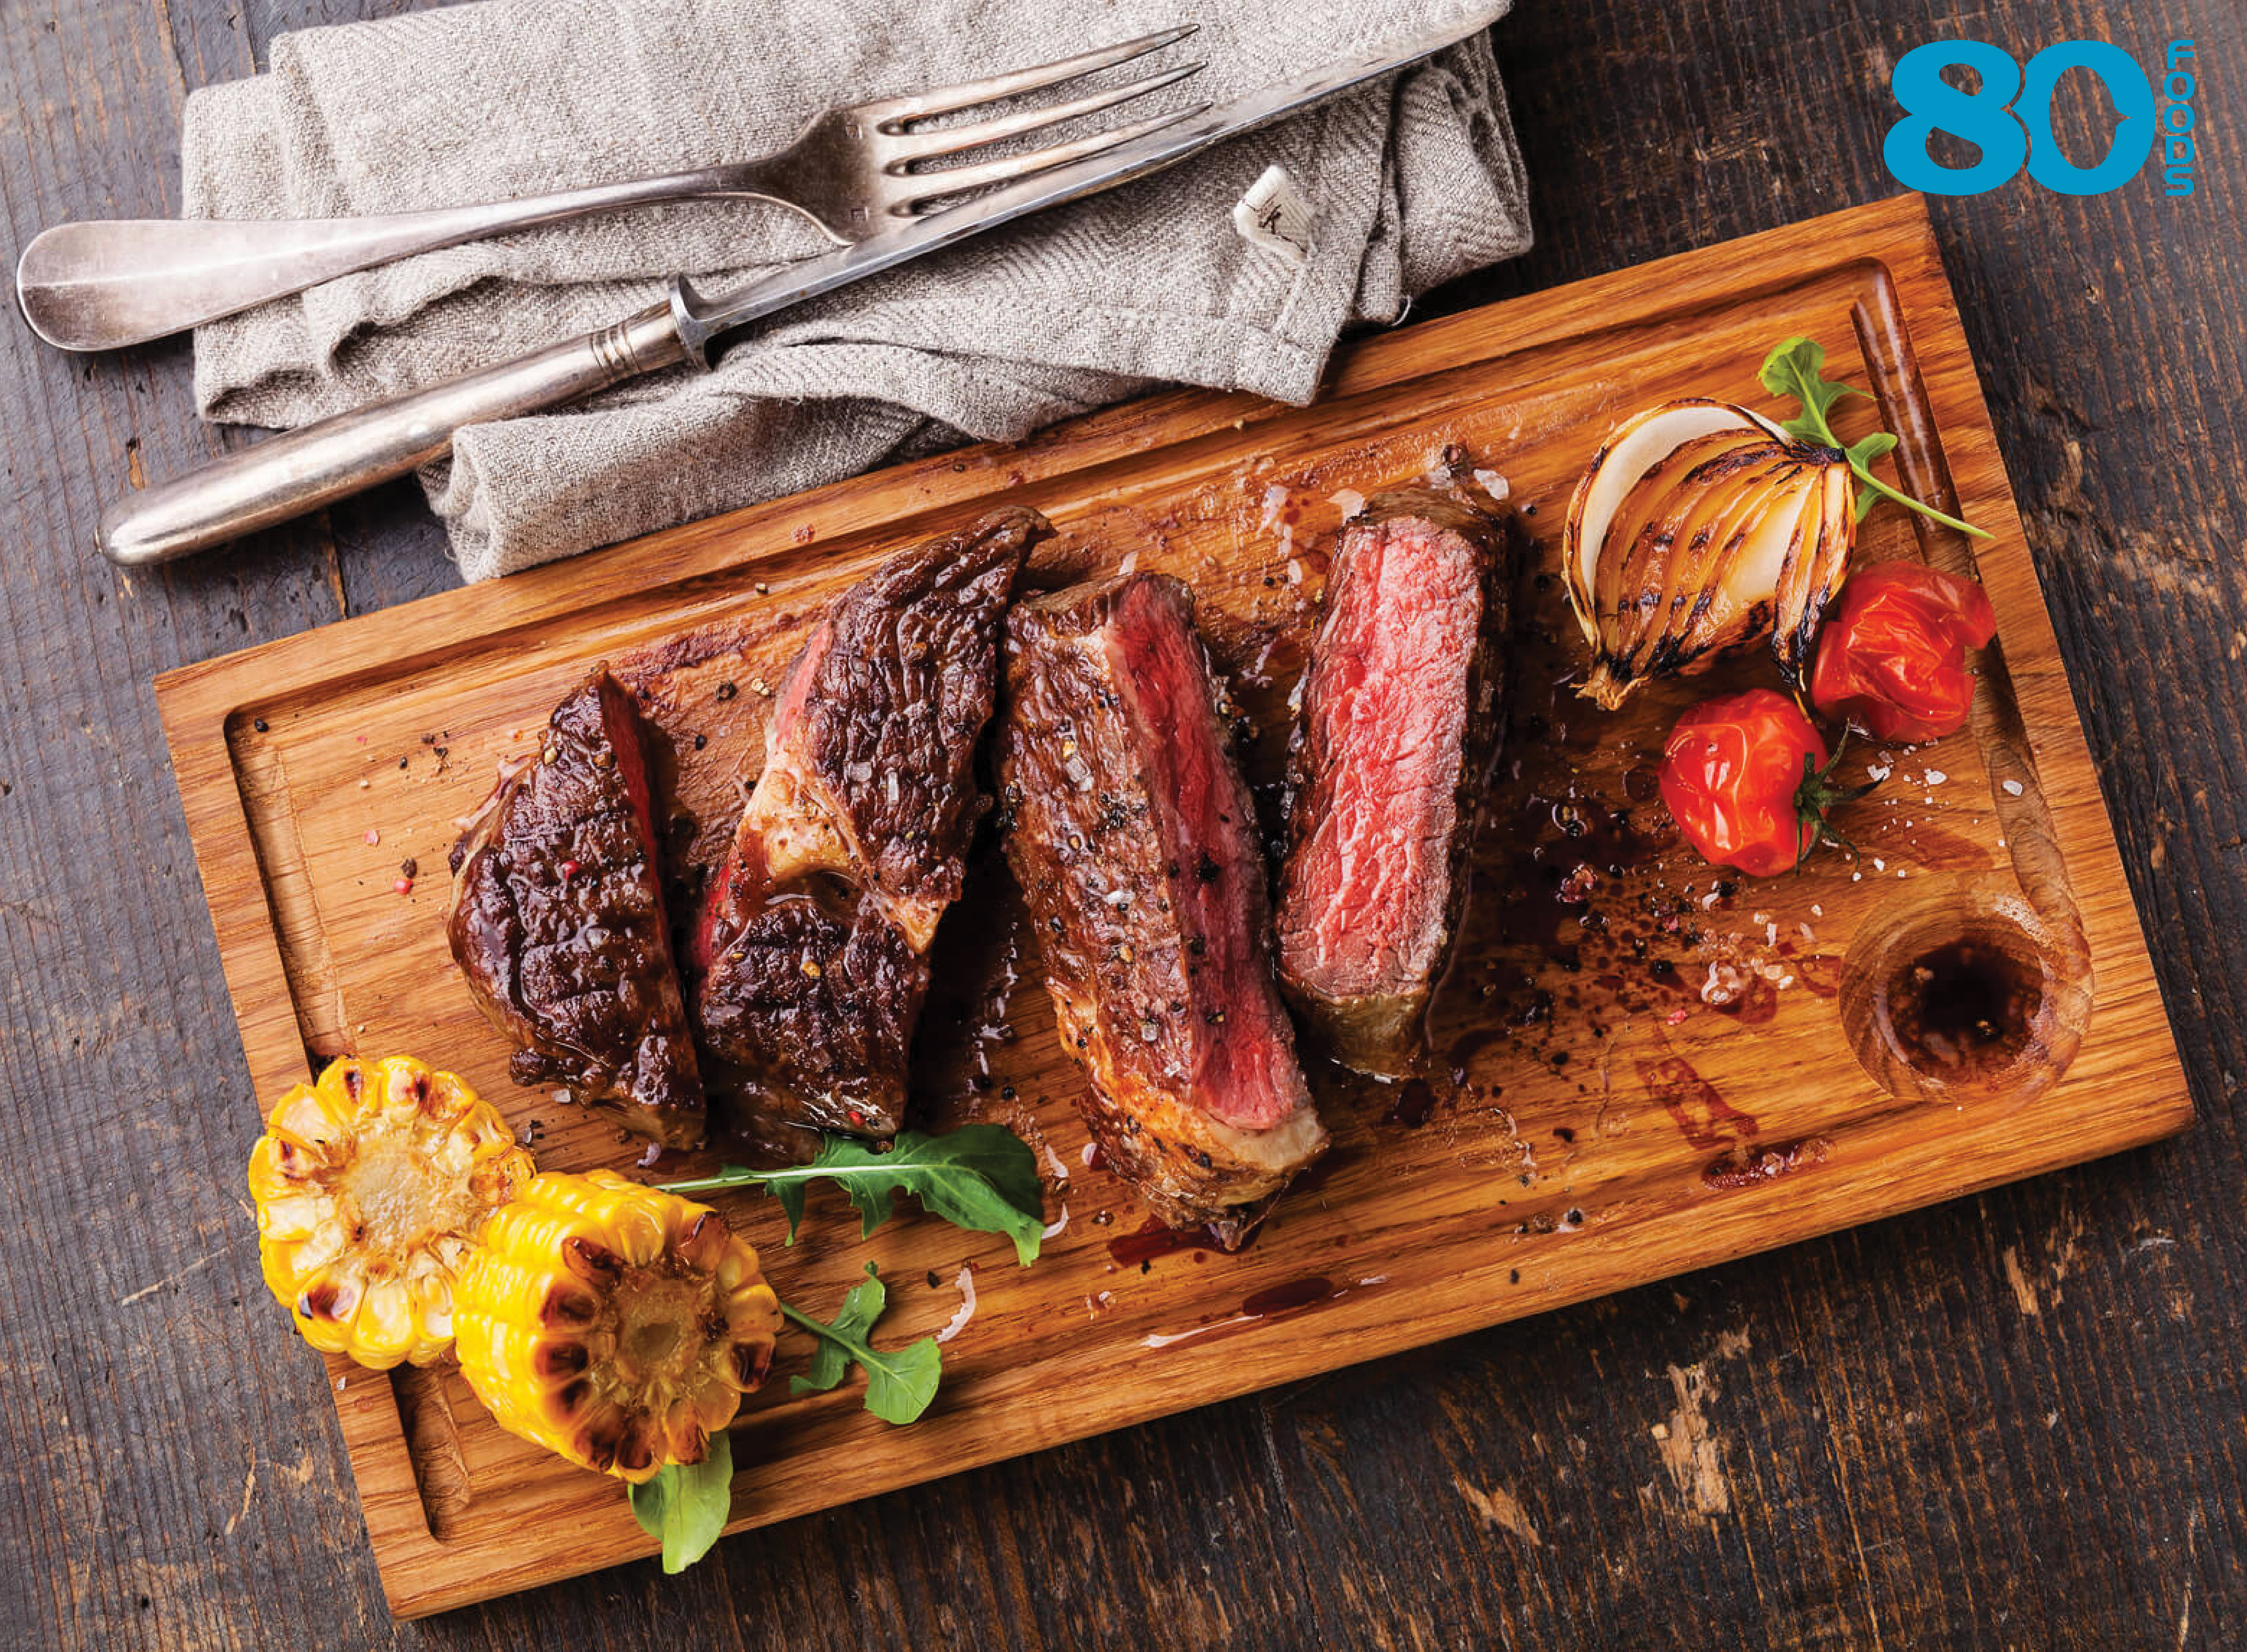 Steak bò Mỹ muốn ngon và chuẩn, cần các loại gia vị gì?